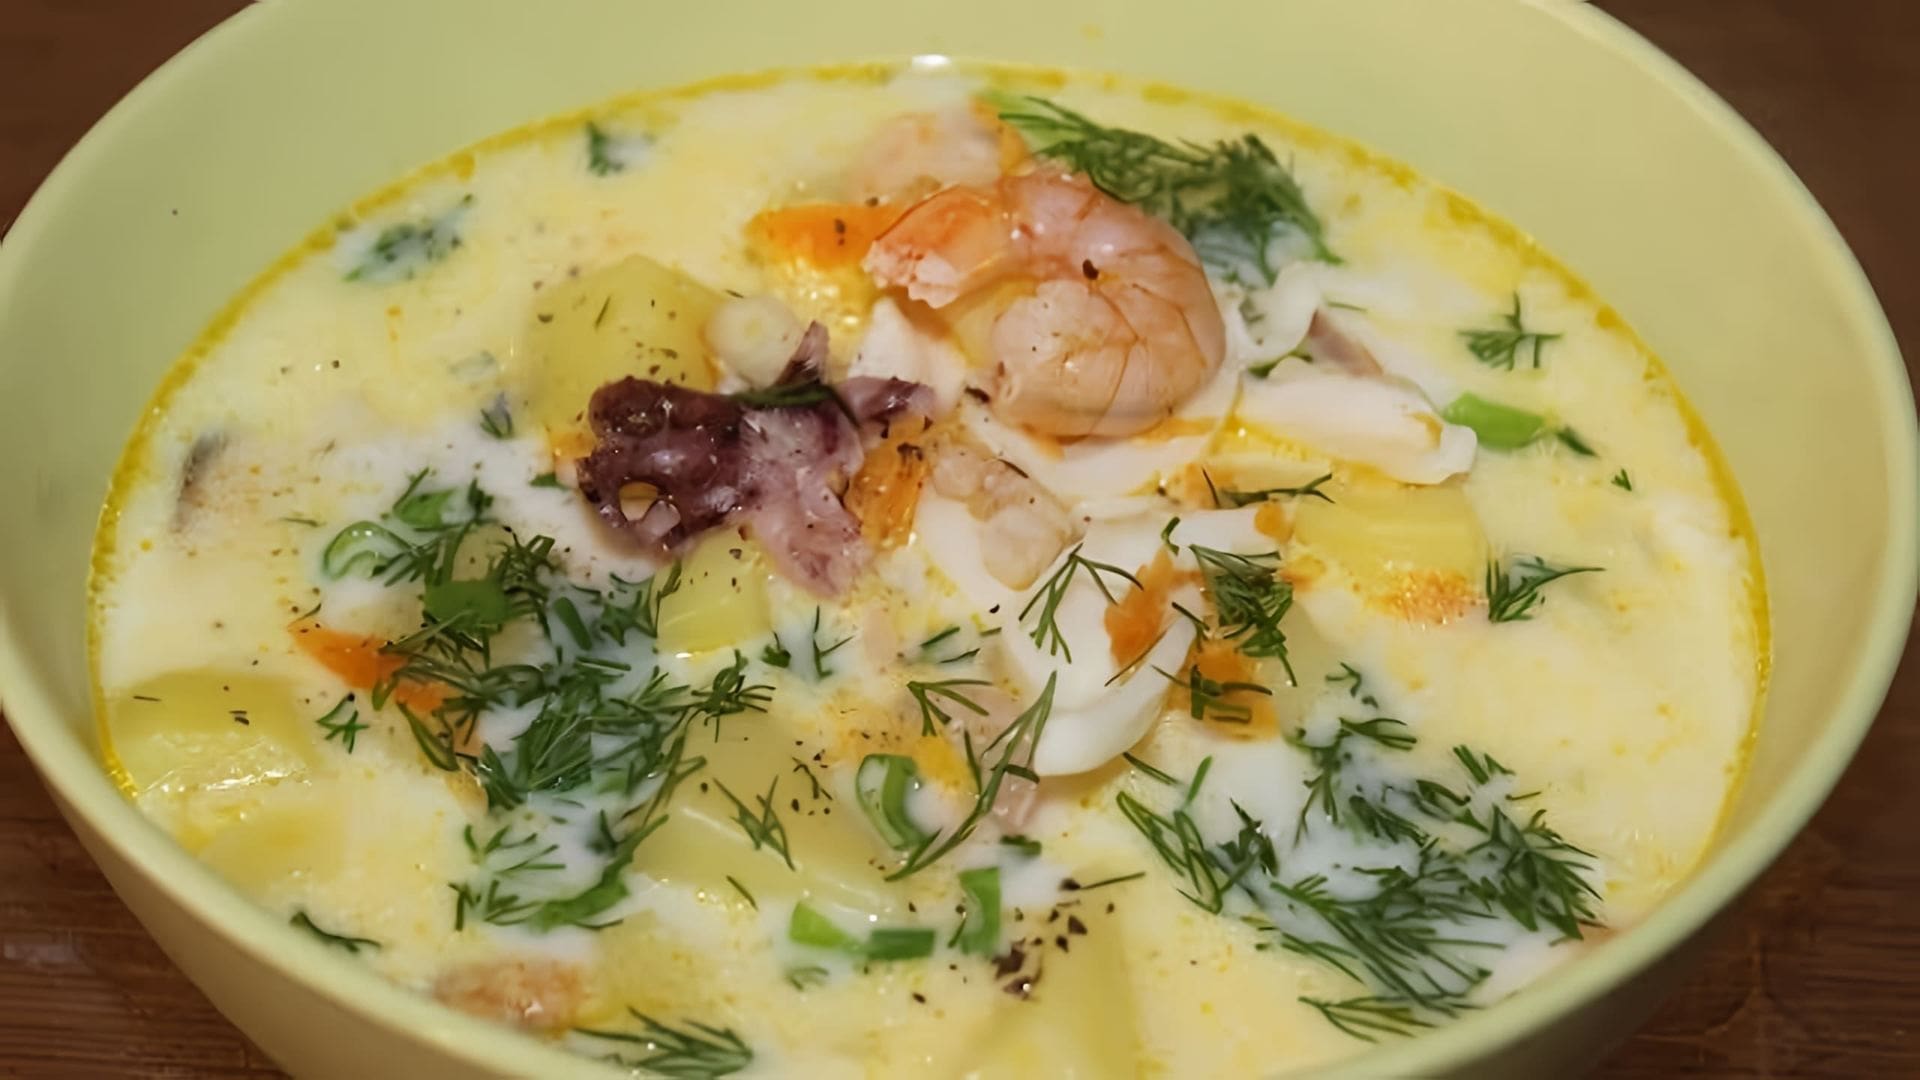 В этом видео демонстрируется процесс приготовления сырного супа с морепродуктами